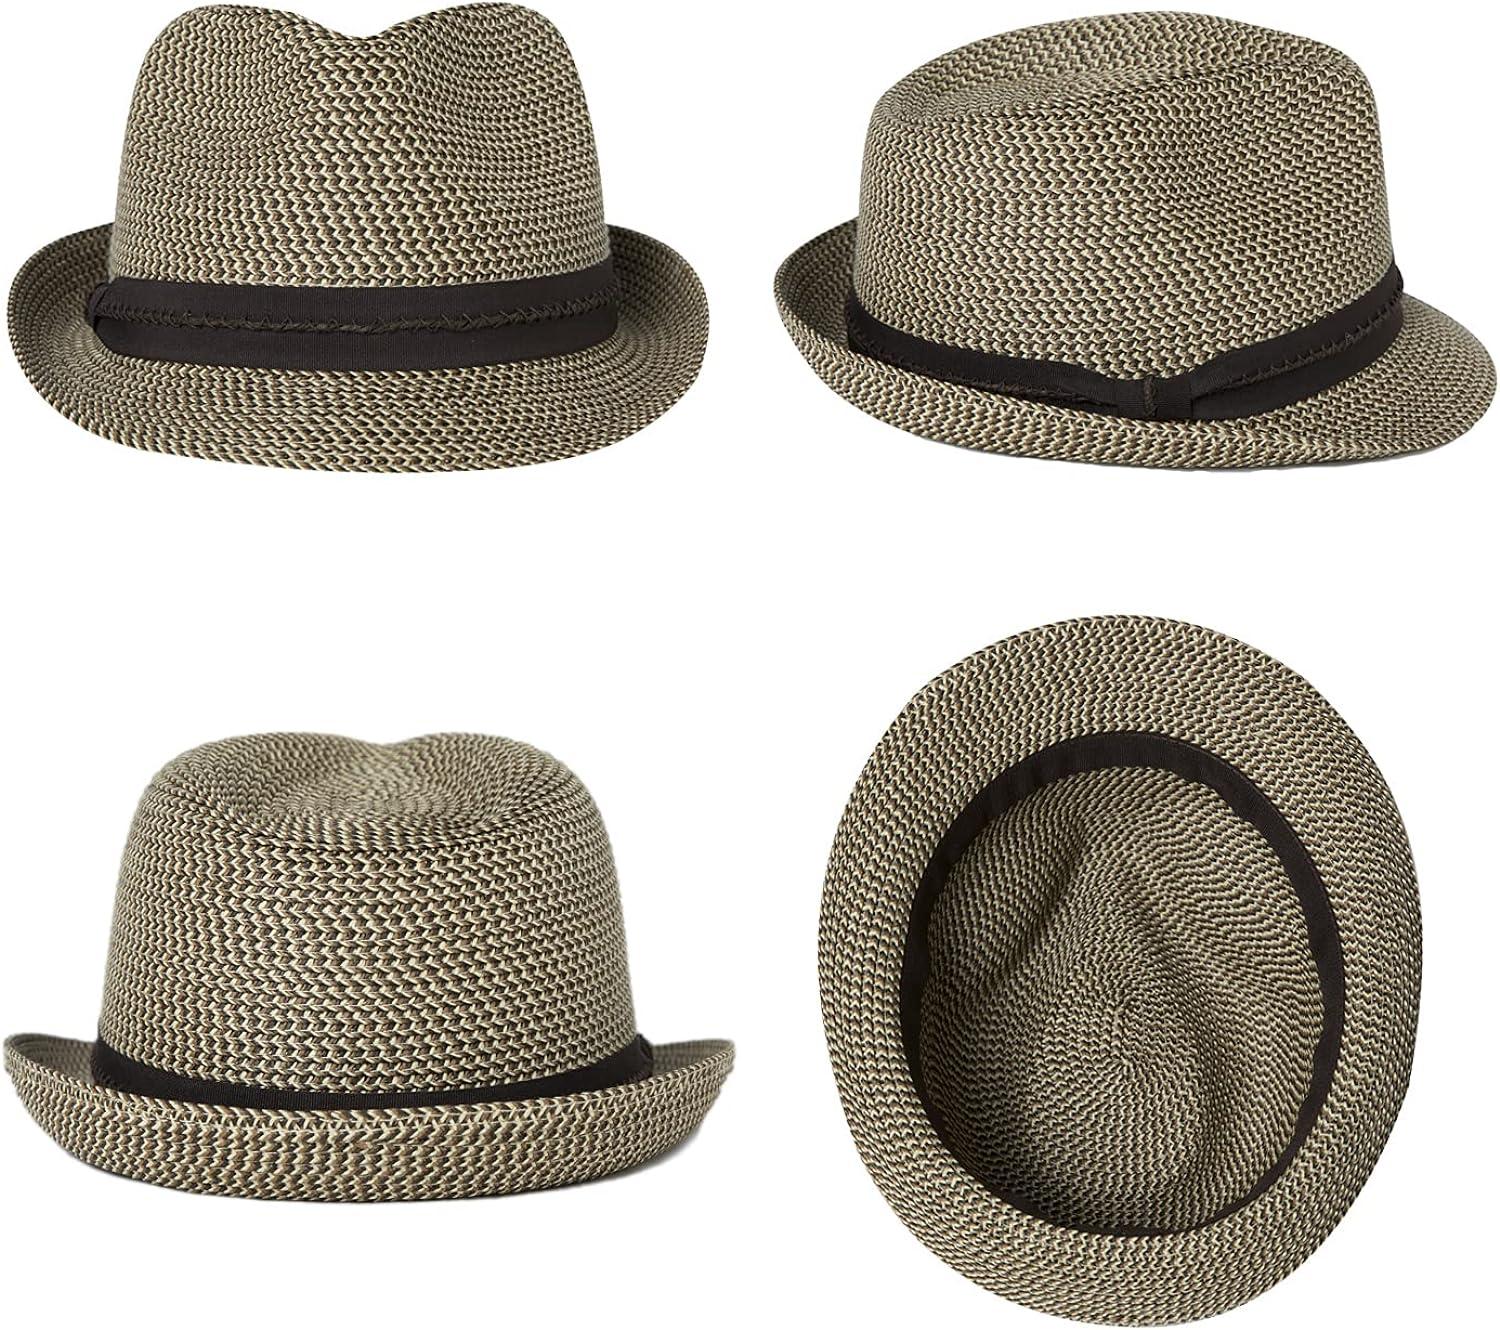 Fancet Mens Straw Panama Fedora Packable Sun Summer Beach Hat